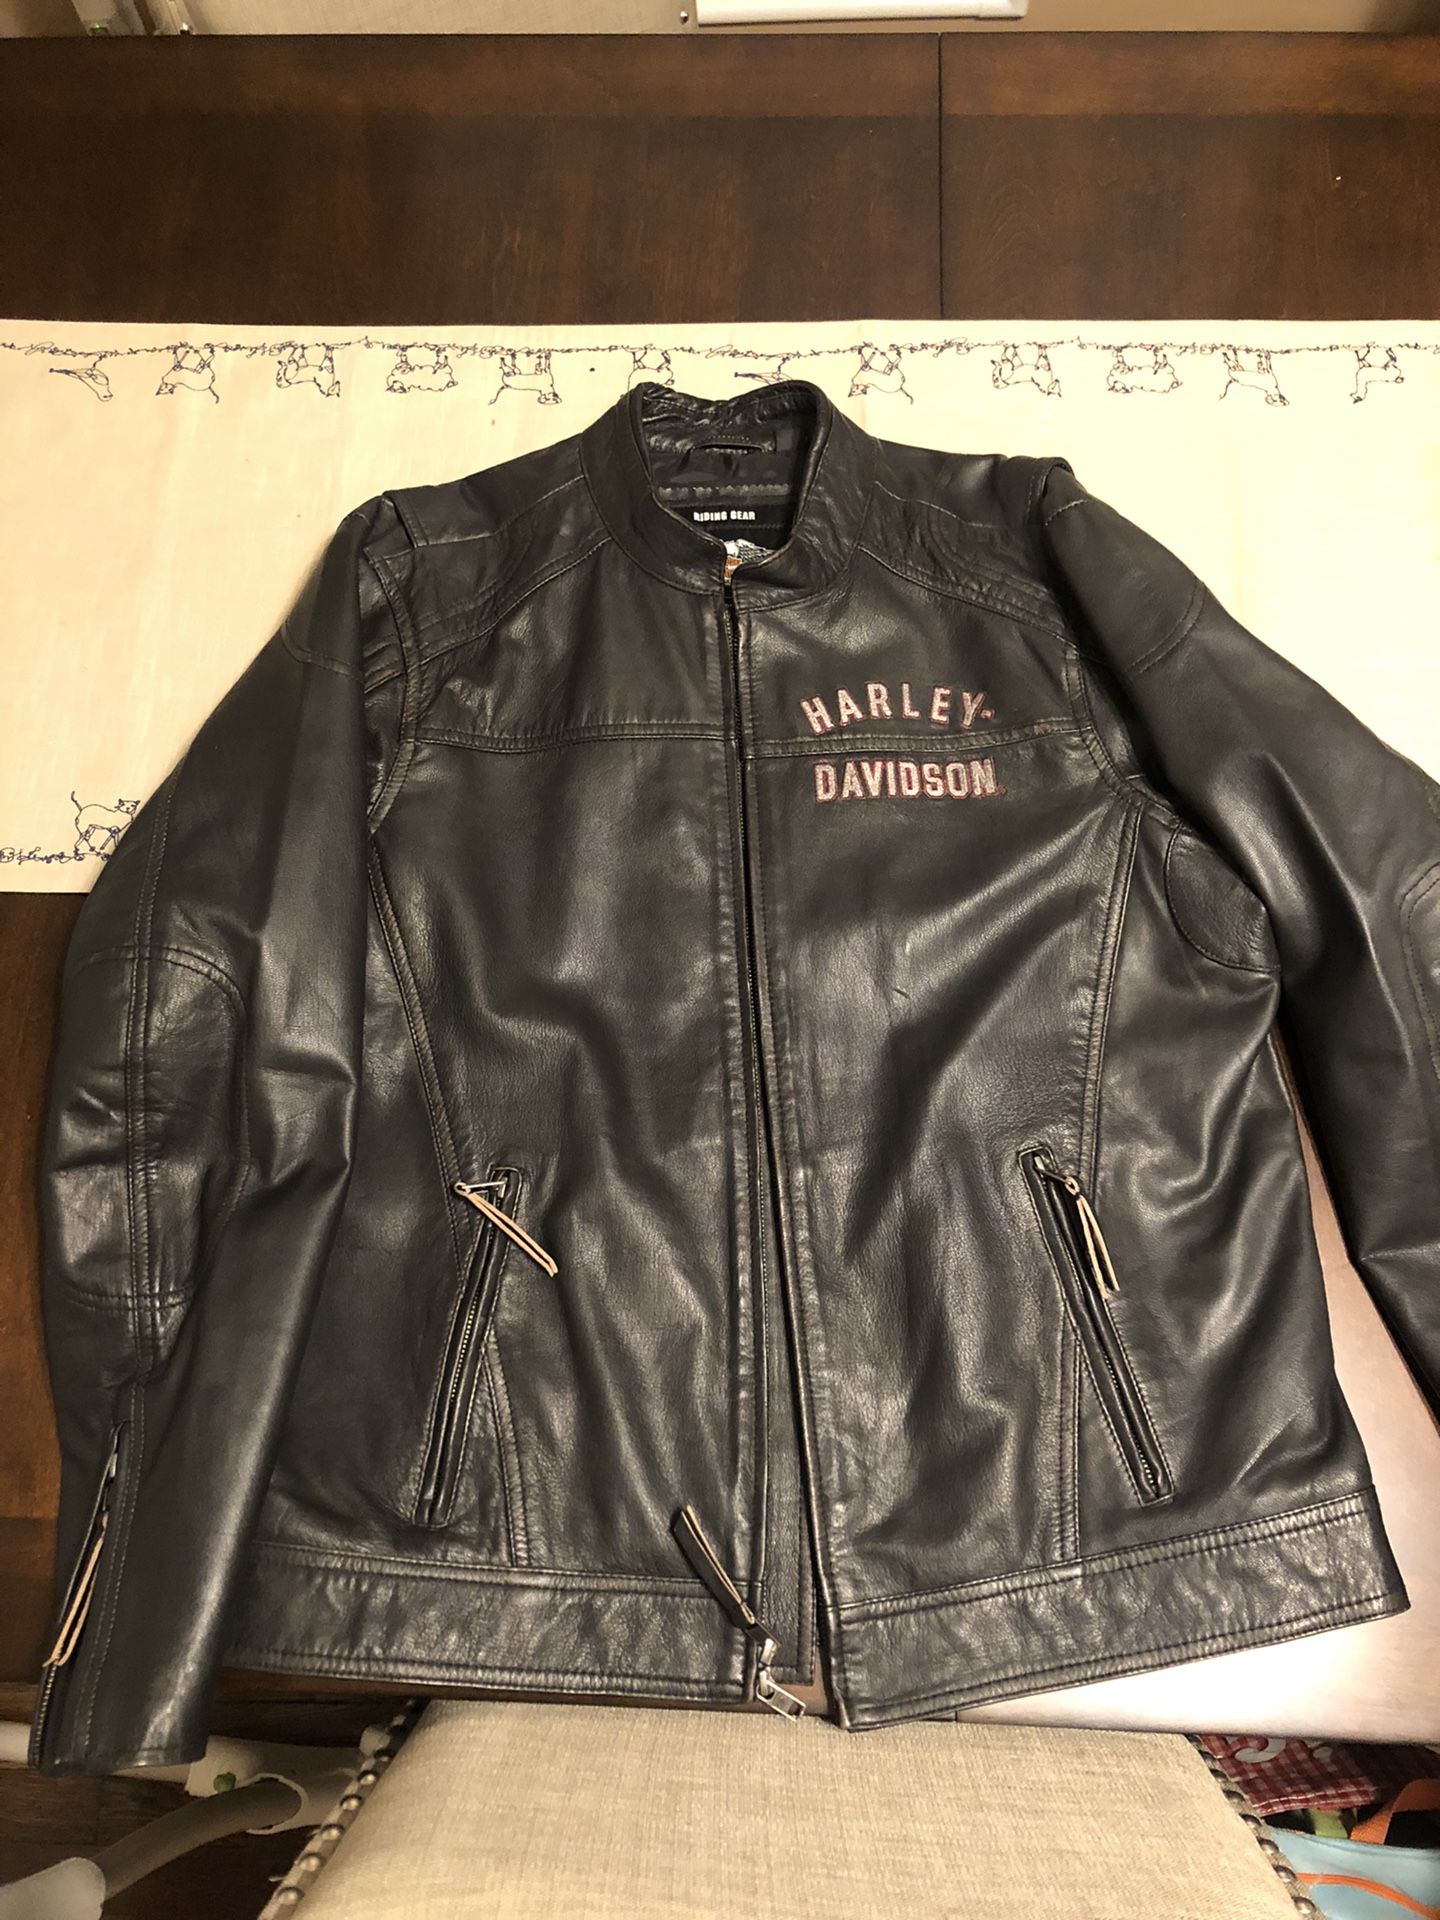 Harley Davidson leather jacket size large